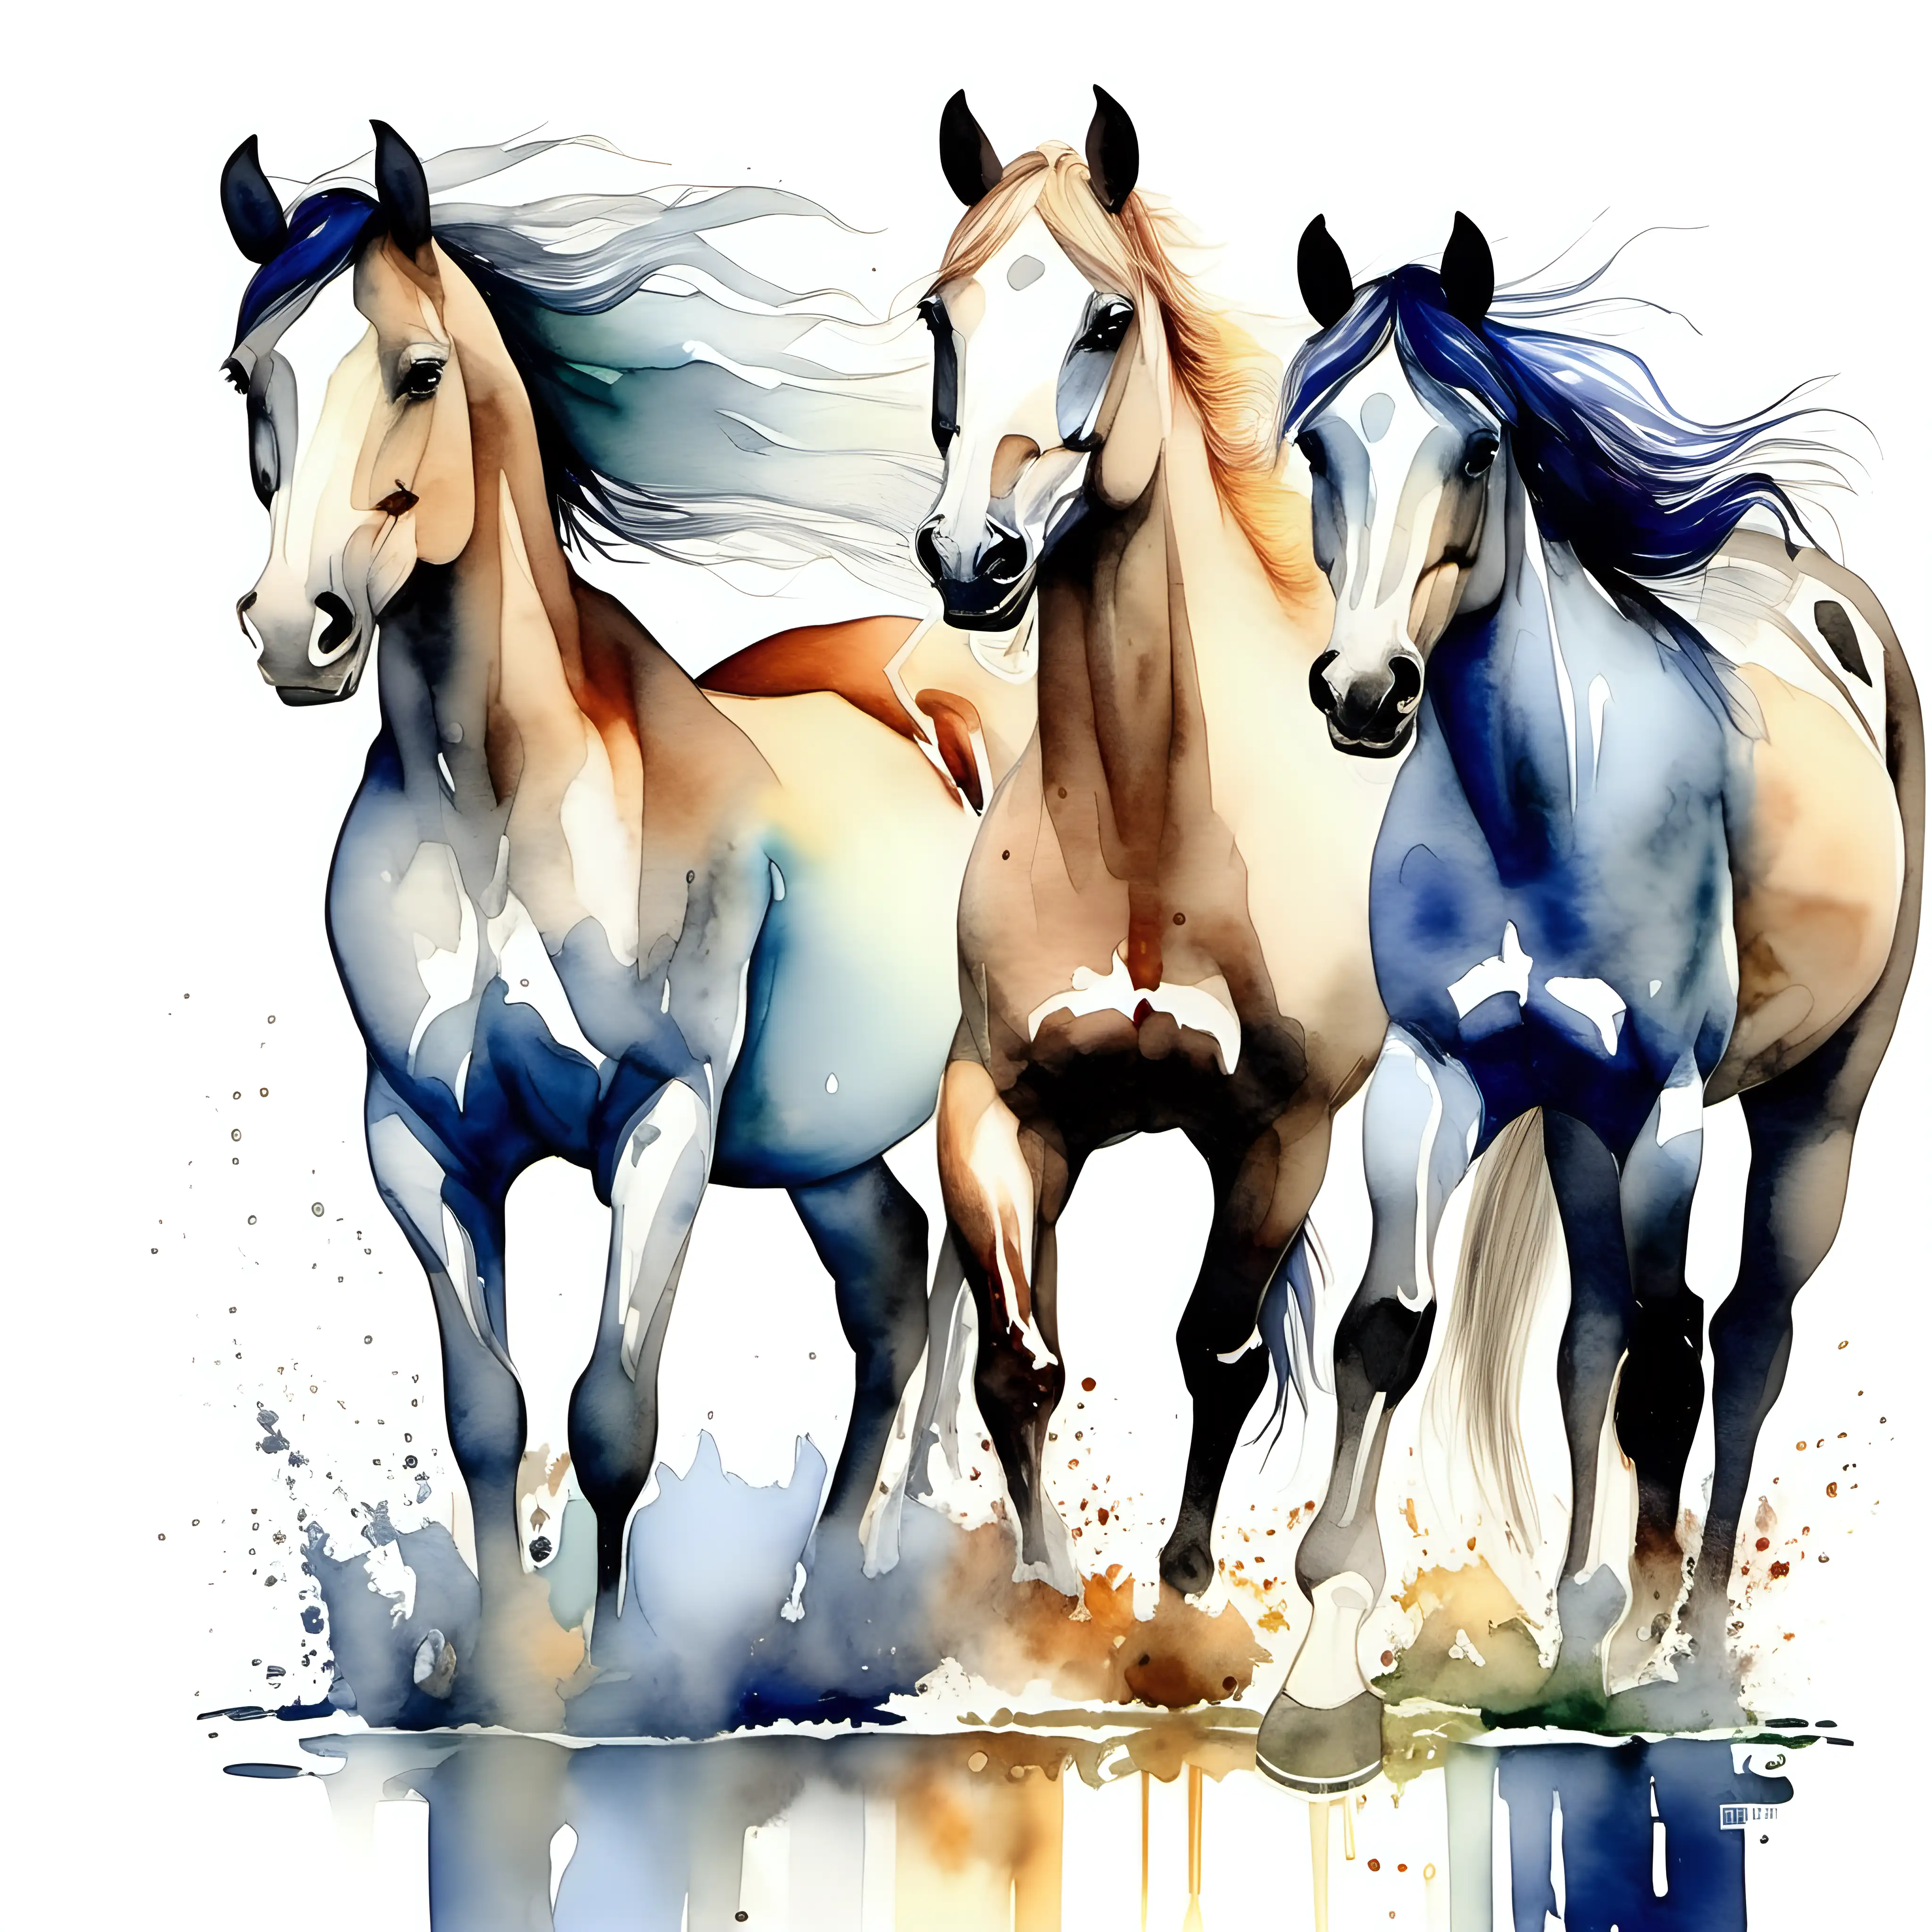 beautiful watercolored horses 
full body 3 hourses